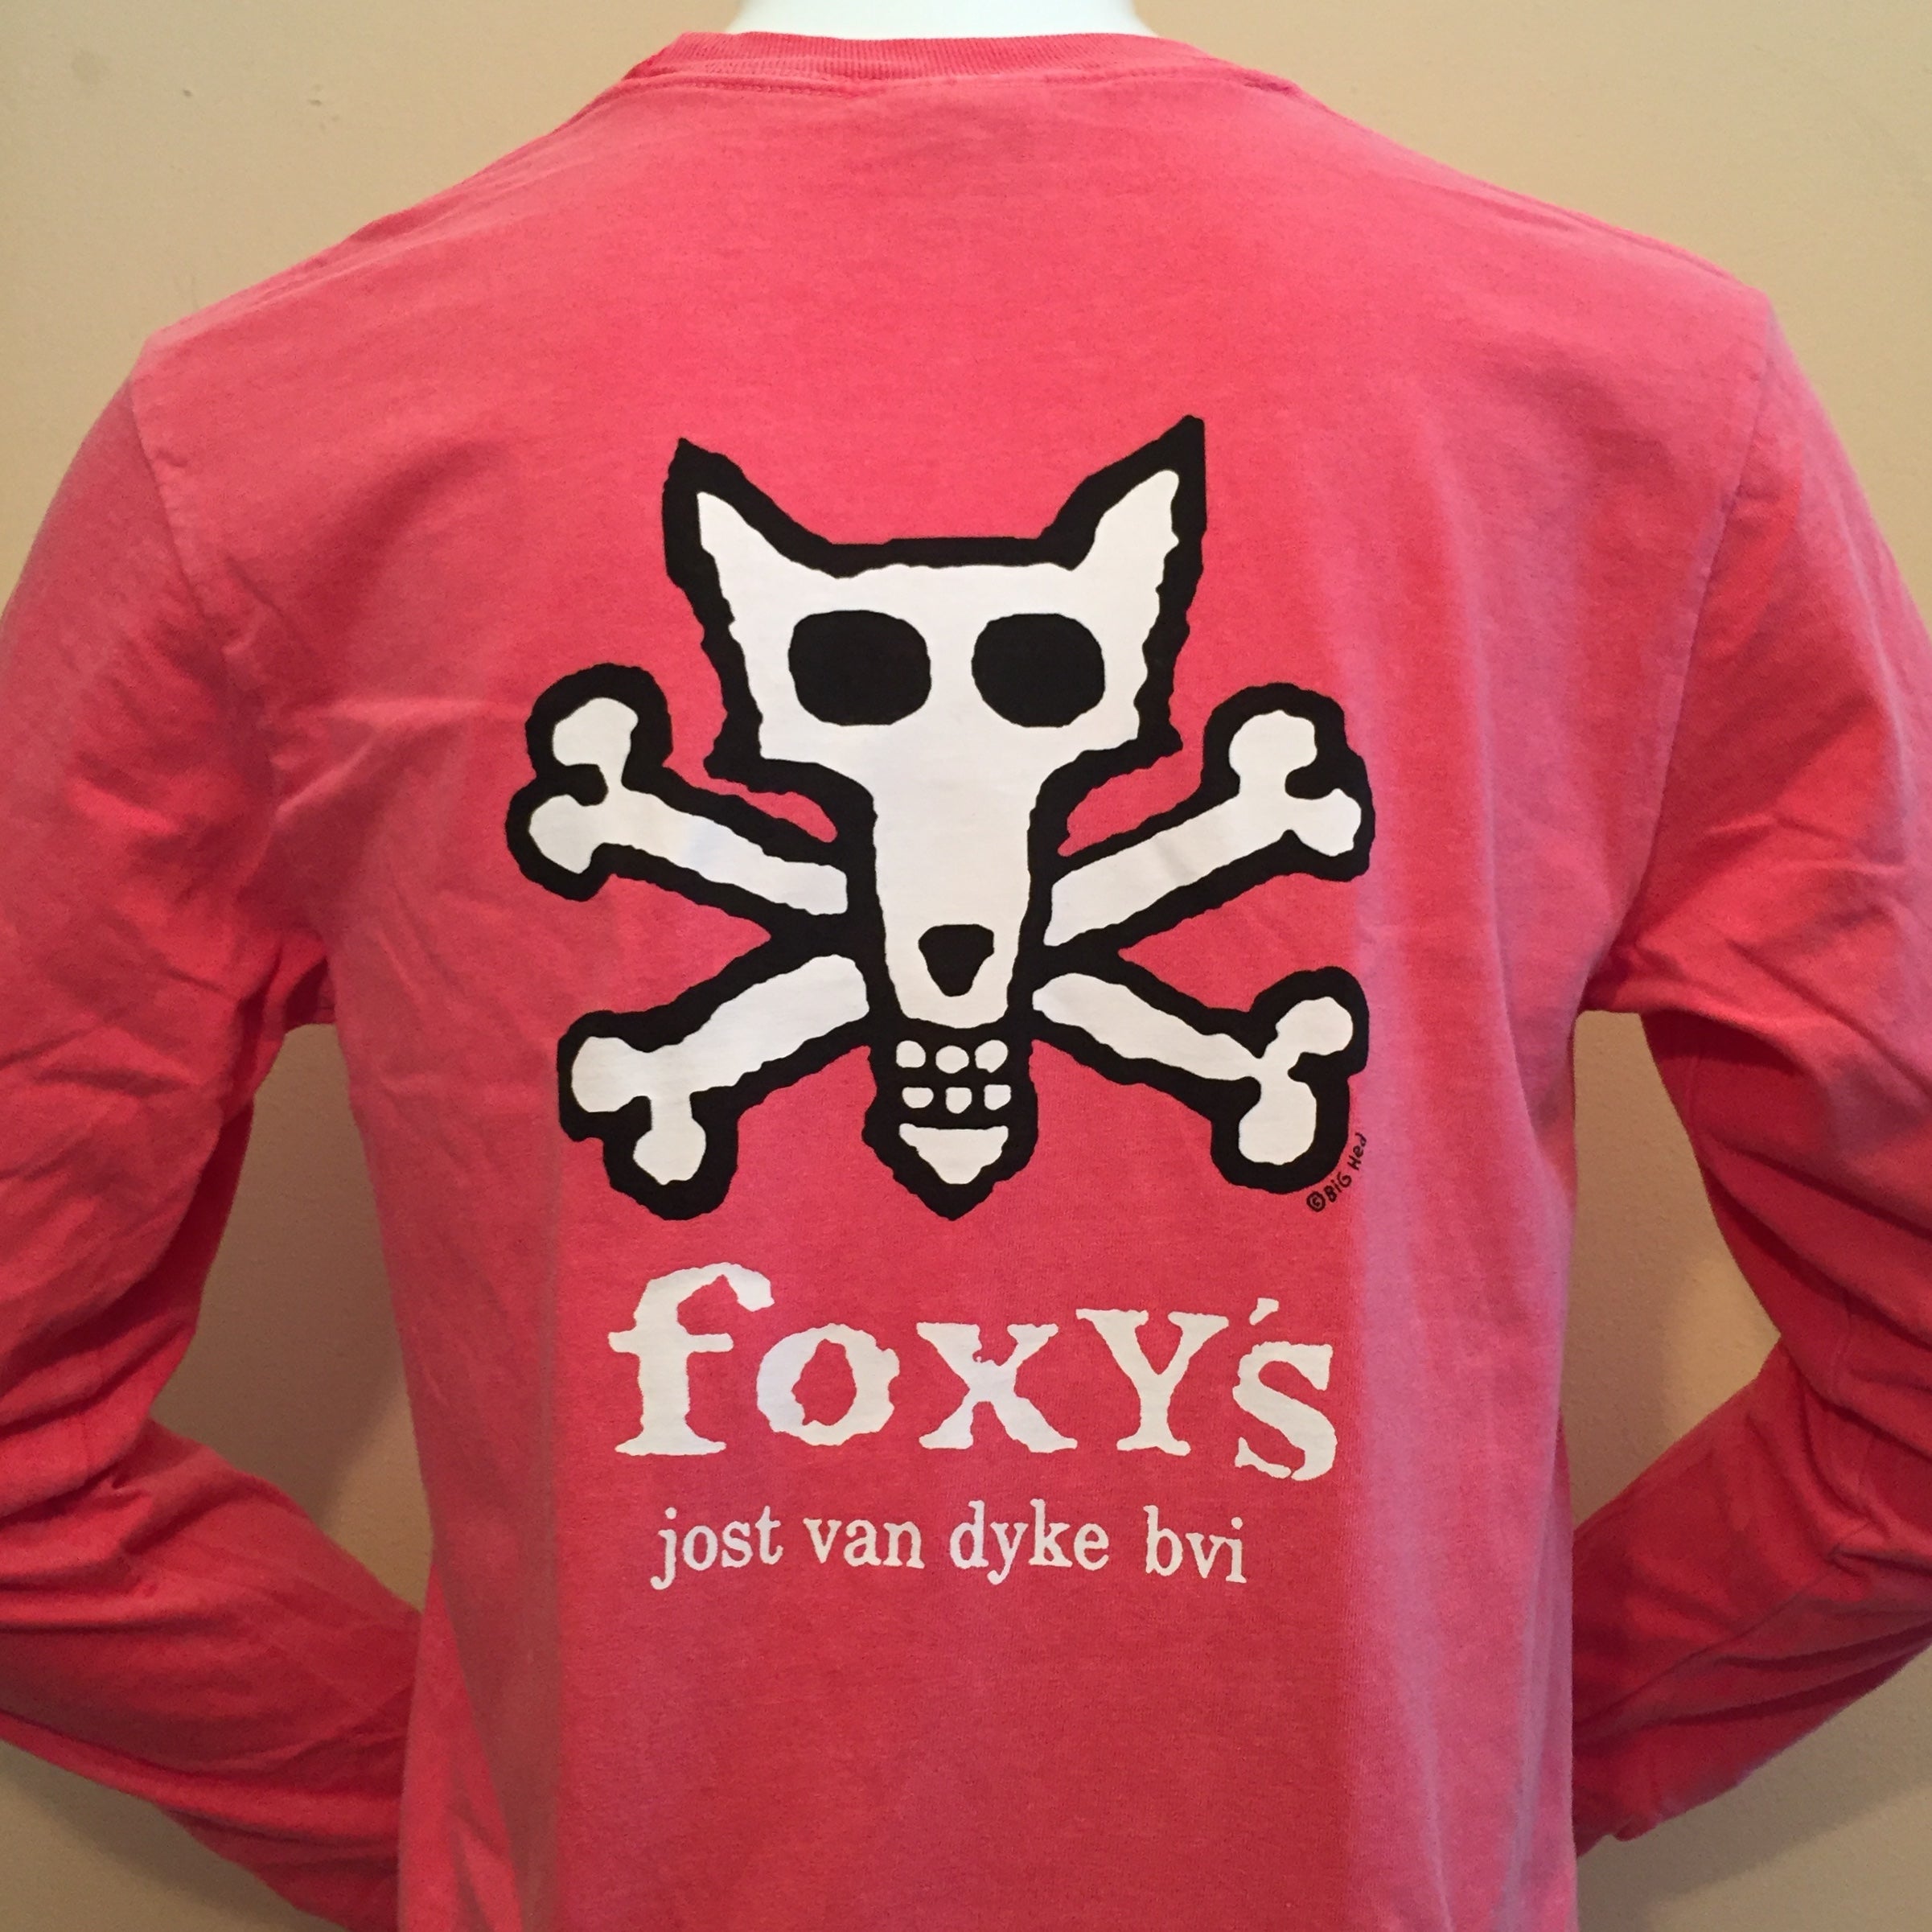 Foxy's 'Skull & Bones' Long Sleeve Tee